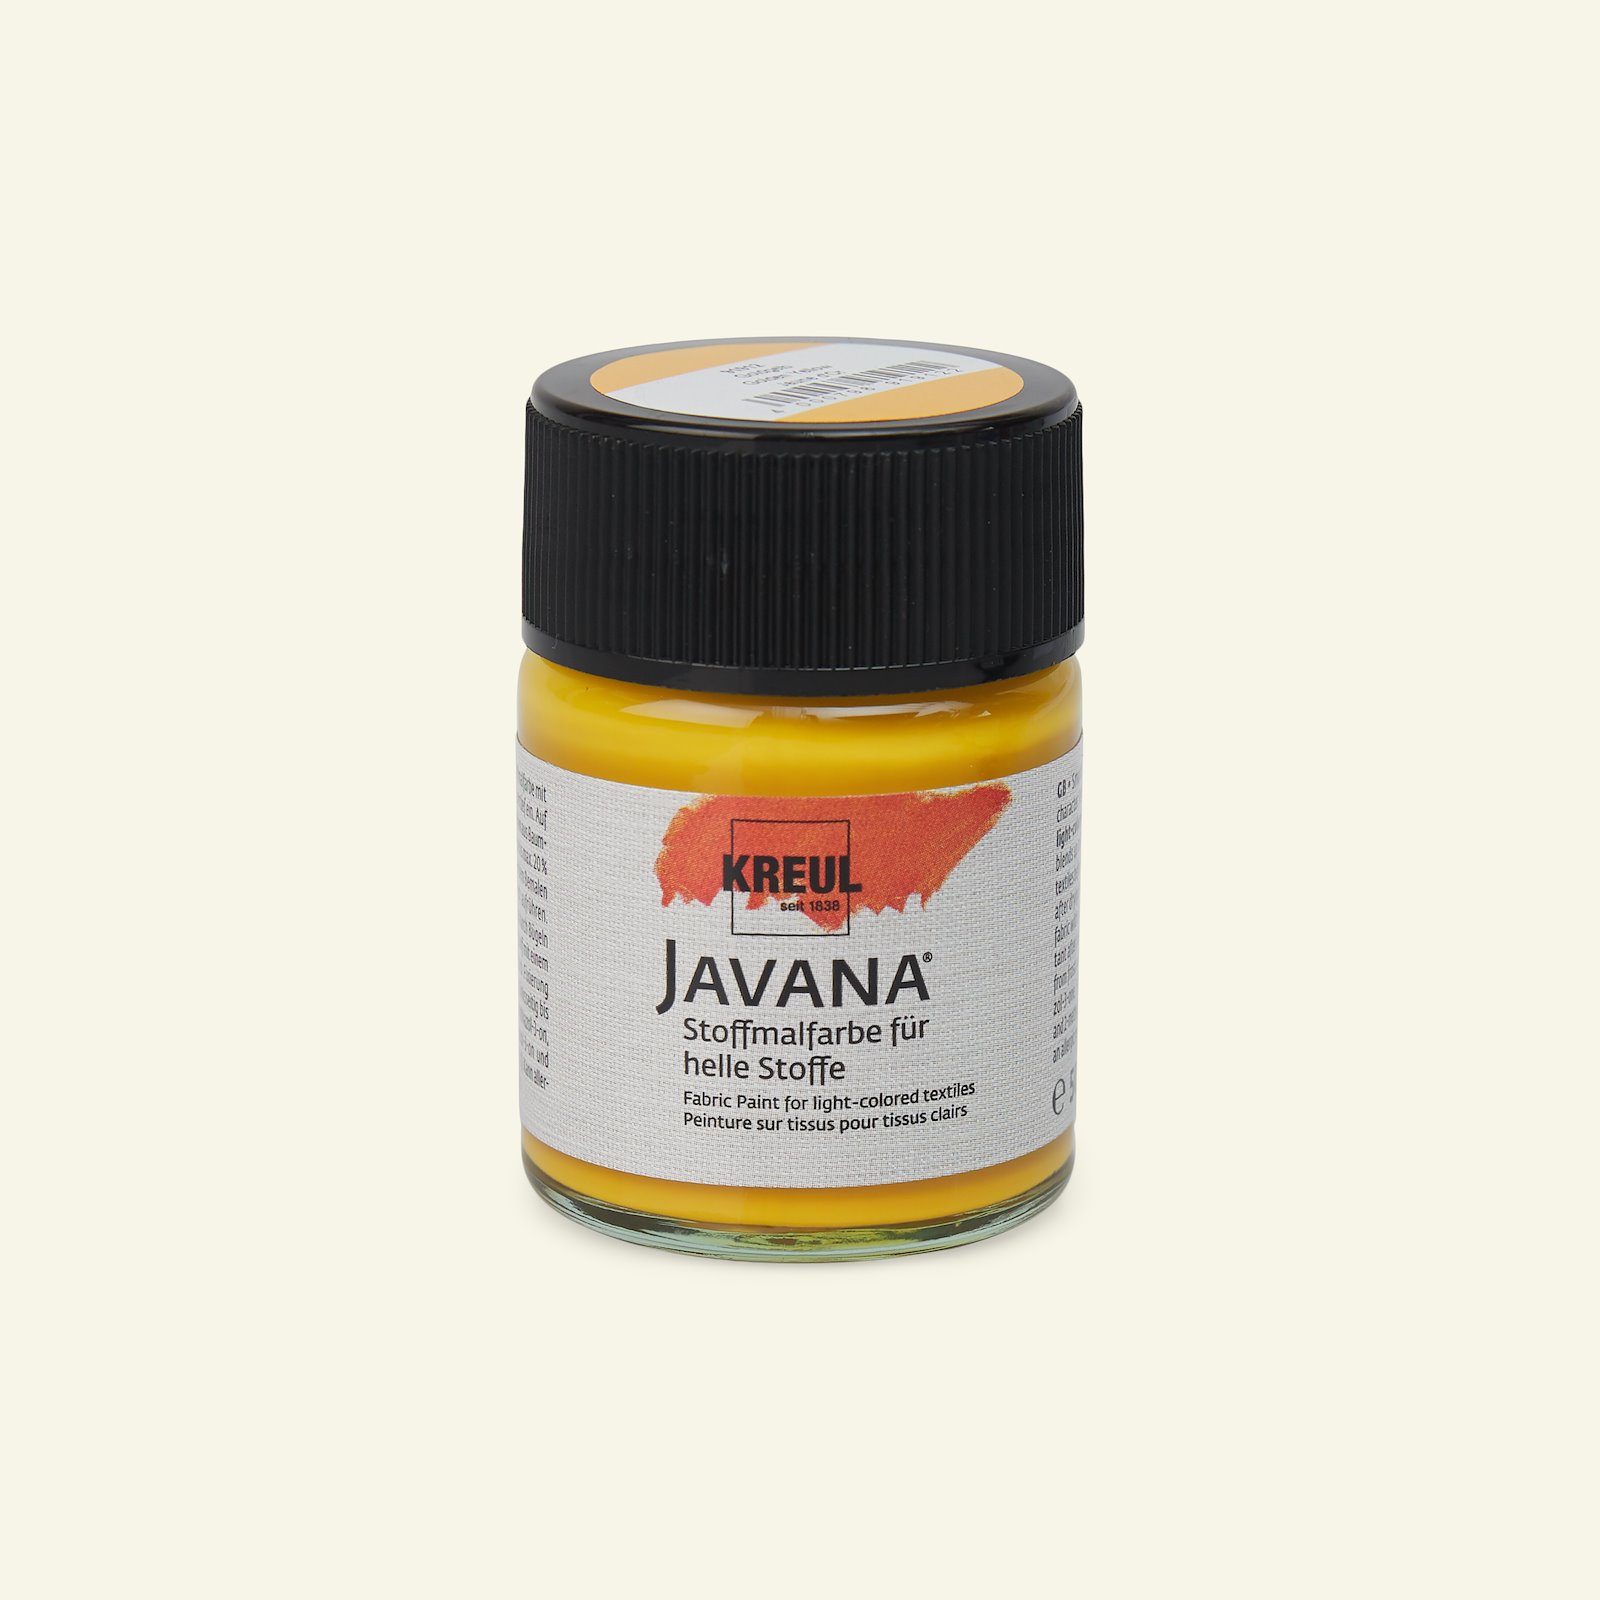 Javana textilfärg, gyllen, 50ml 29602_pack_b